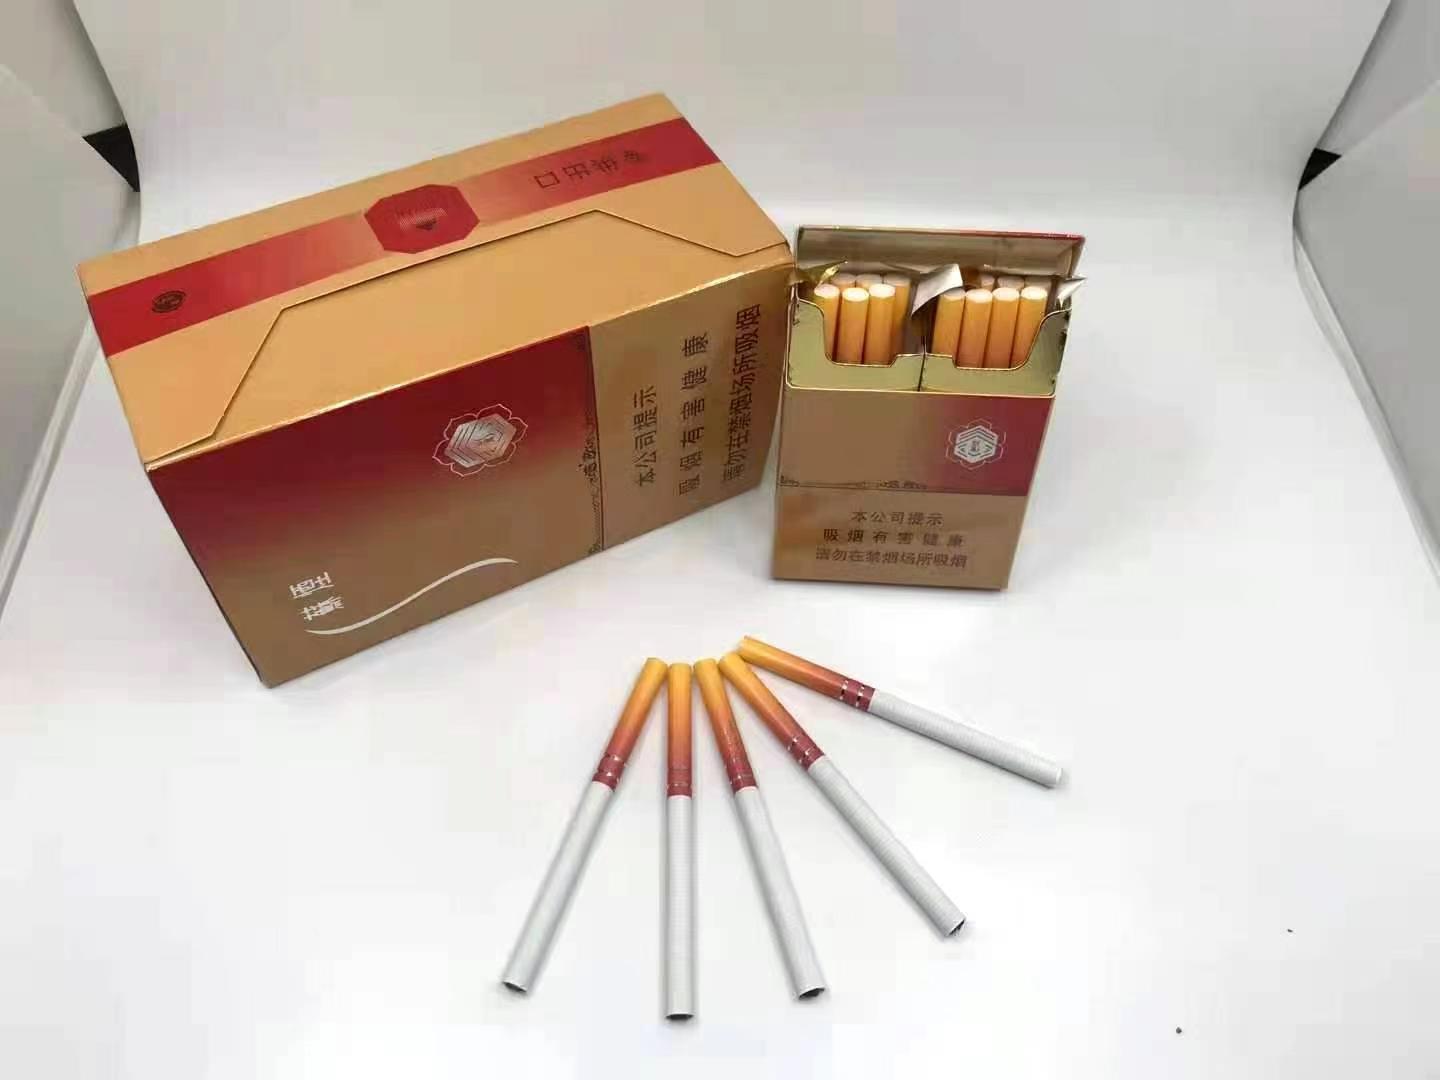 越南代工烟_越南烟代工厂微信_越南代工香烟联系方式